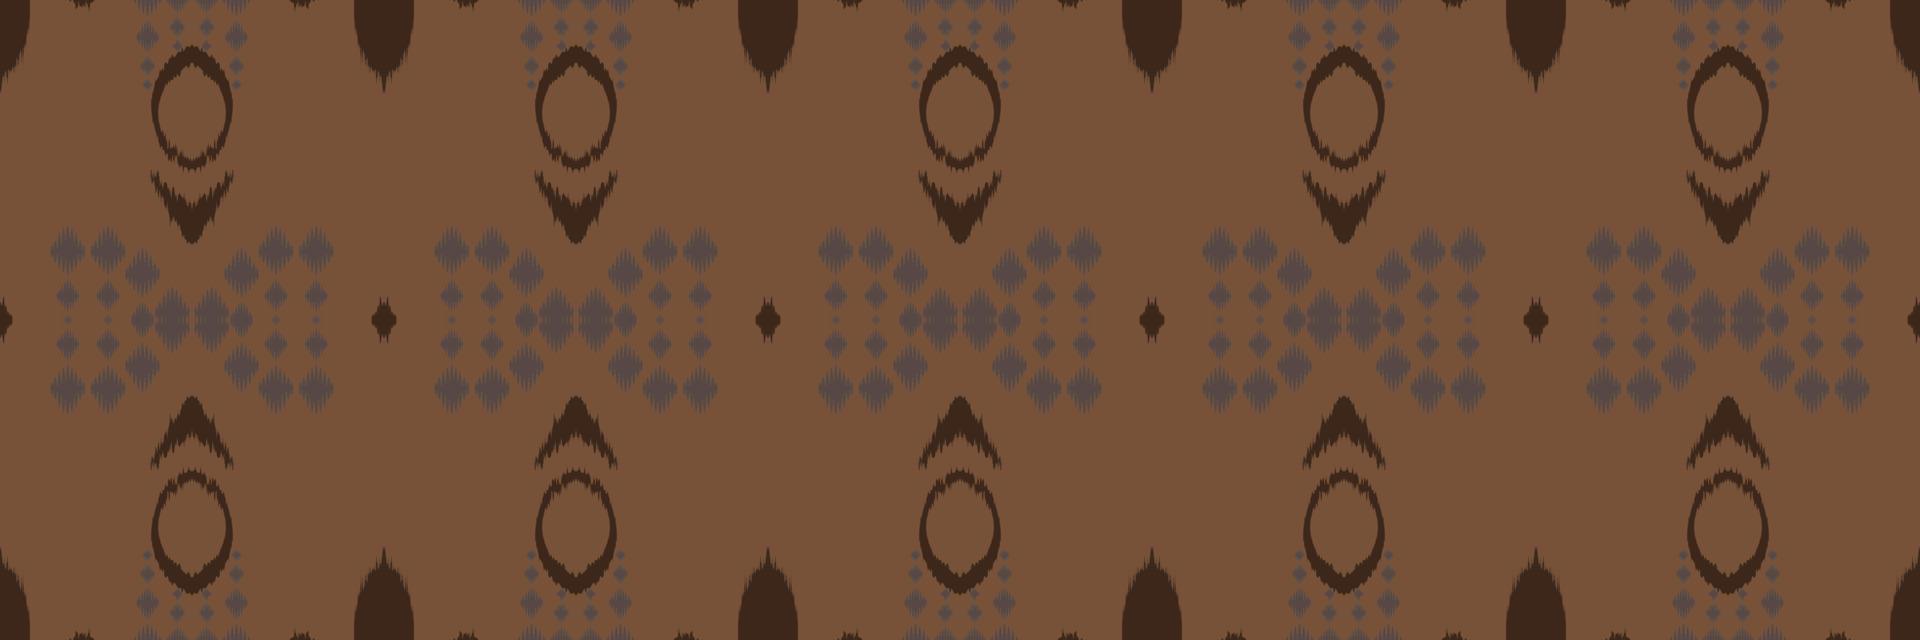 motivo ikat listras batik têxtil padrão sem costura design de vetor digital para impressão saree kurti borneo tecido borda pincel símbolos amostras elegantes